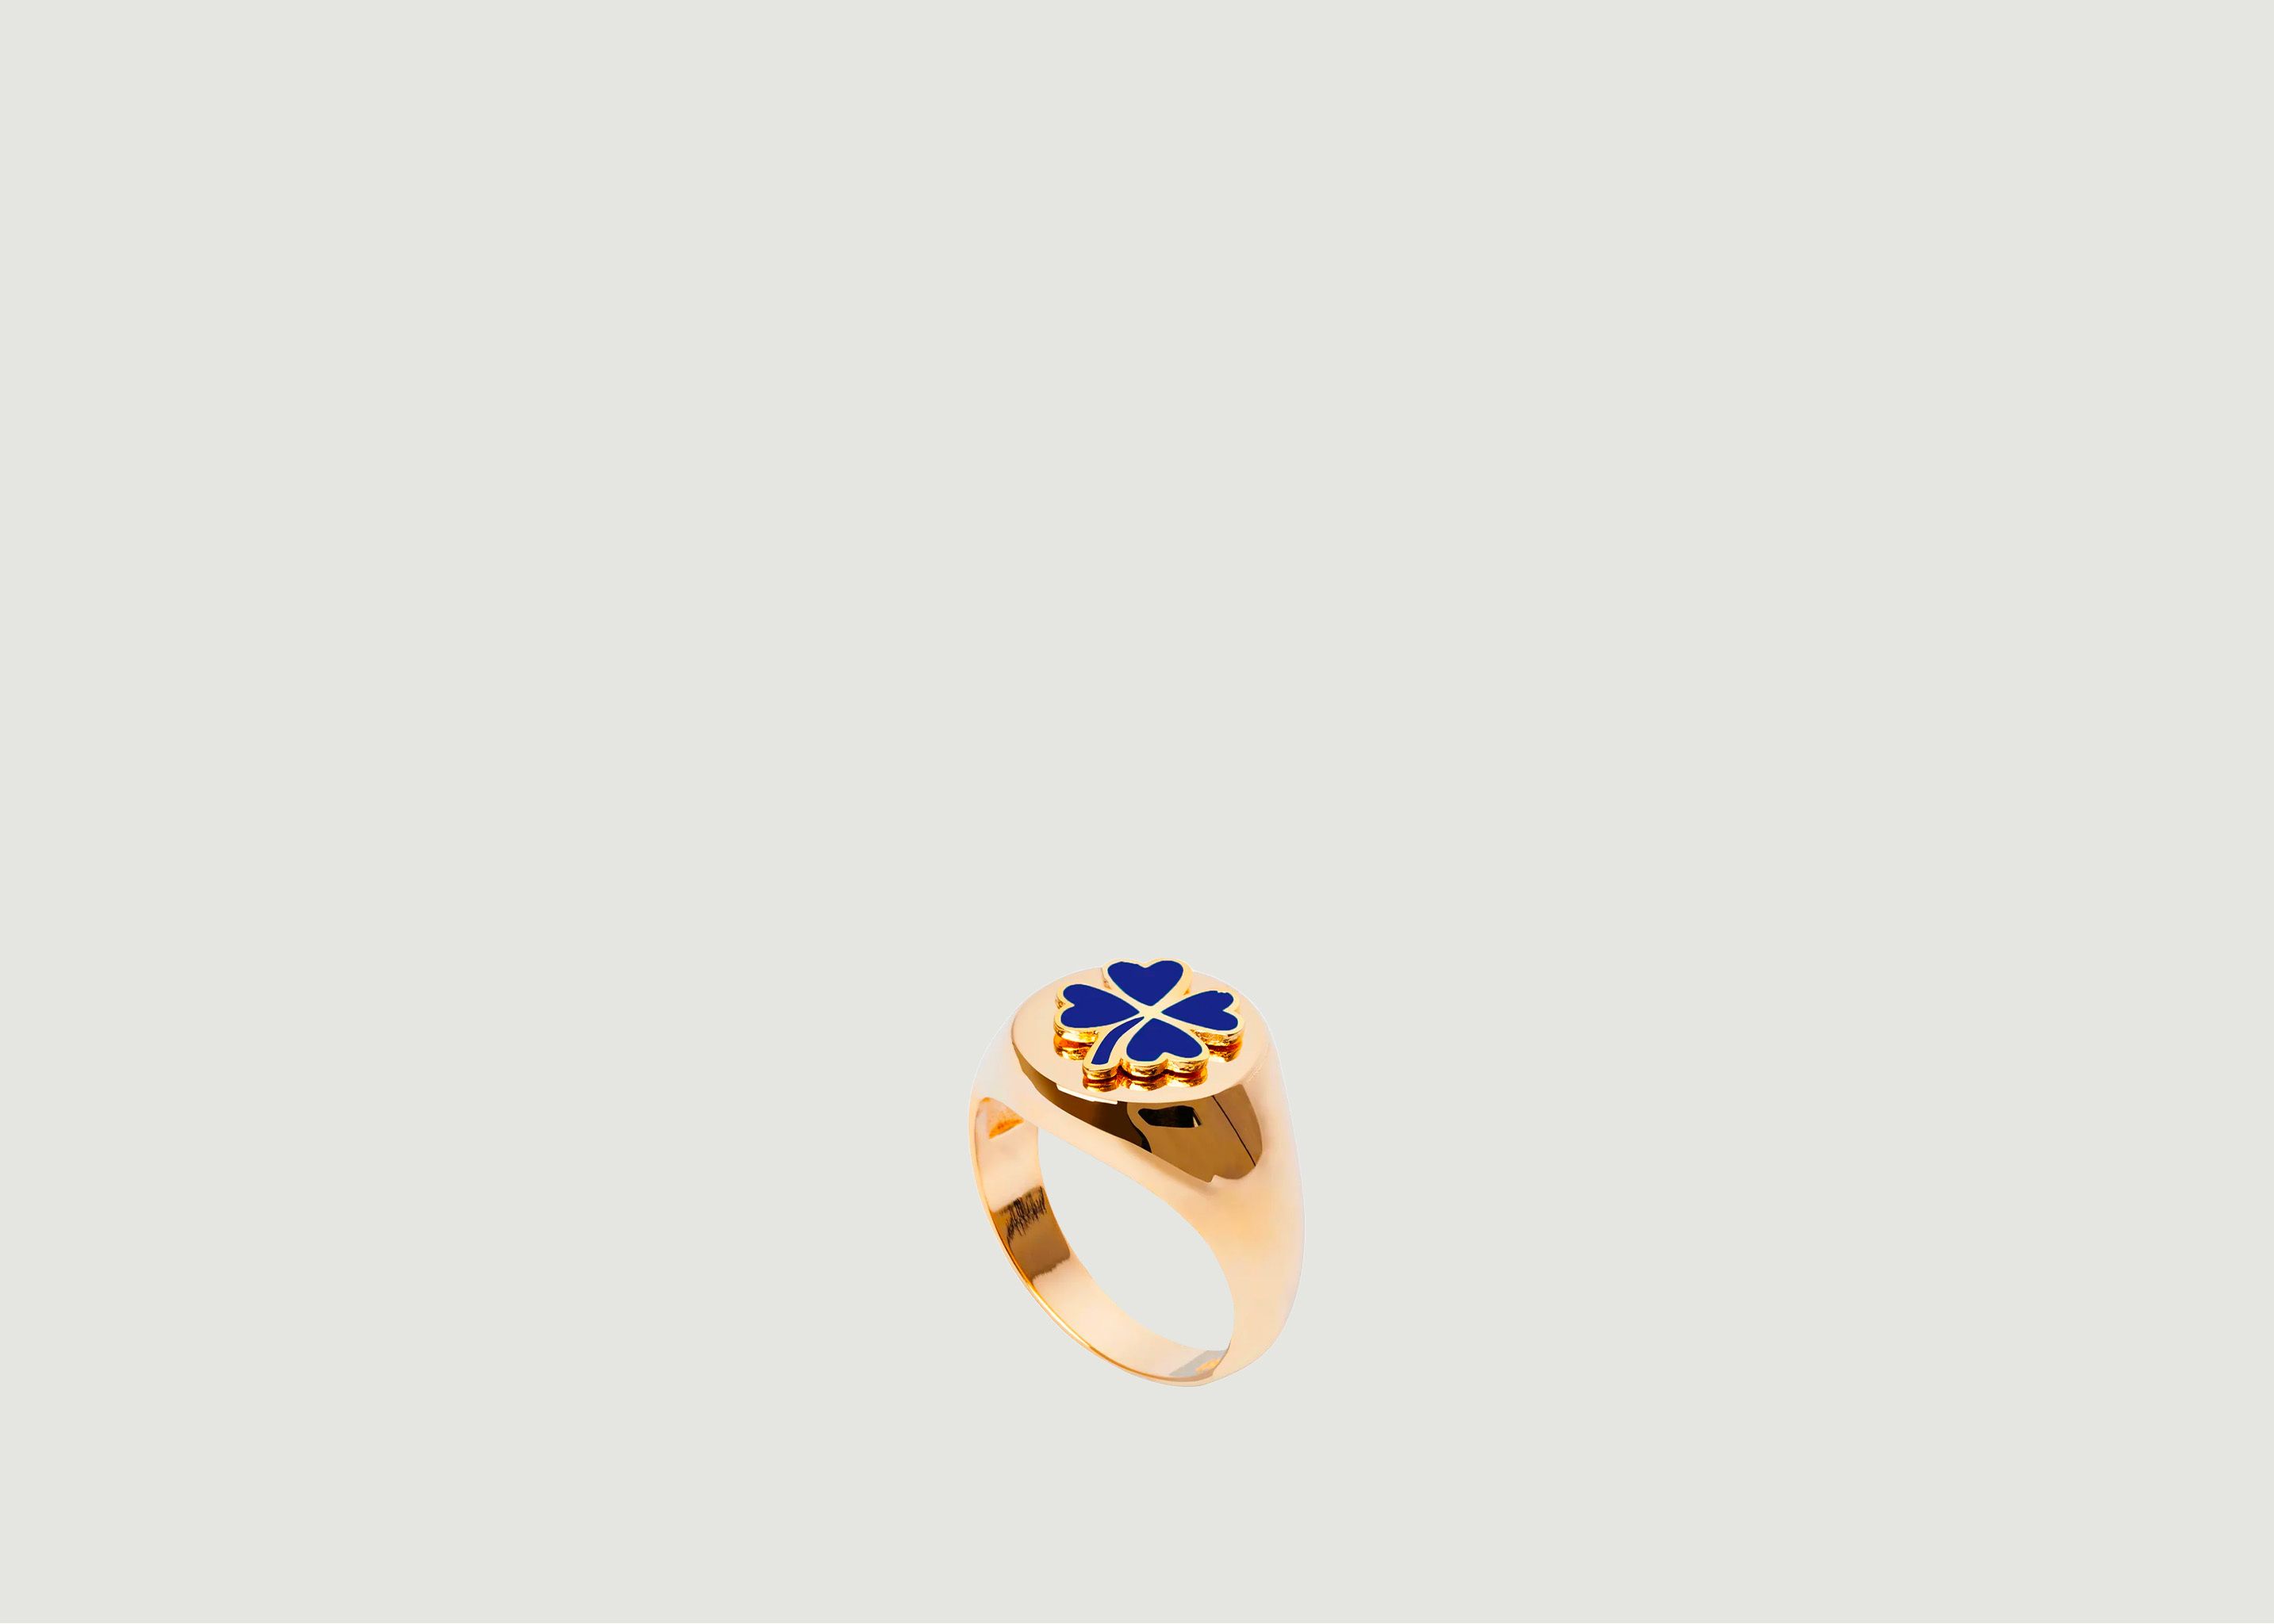 Gold Blue Clover Ring - Wilhelmina Garcia